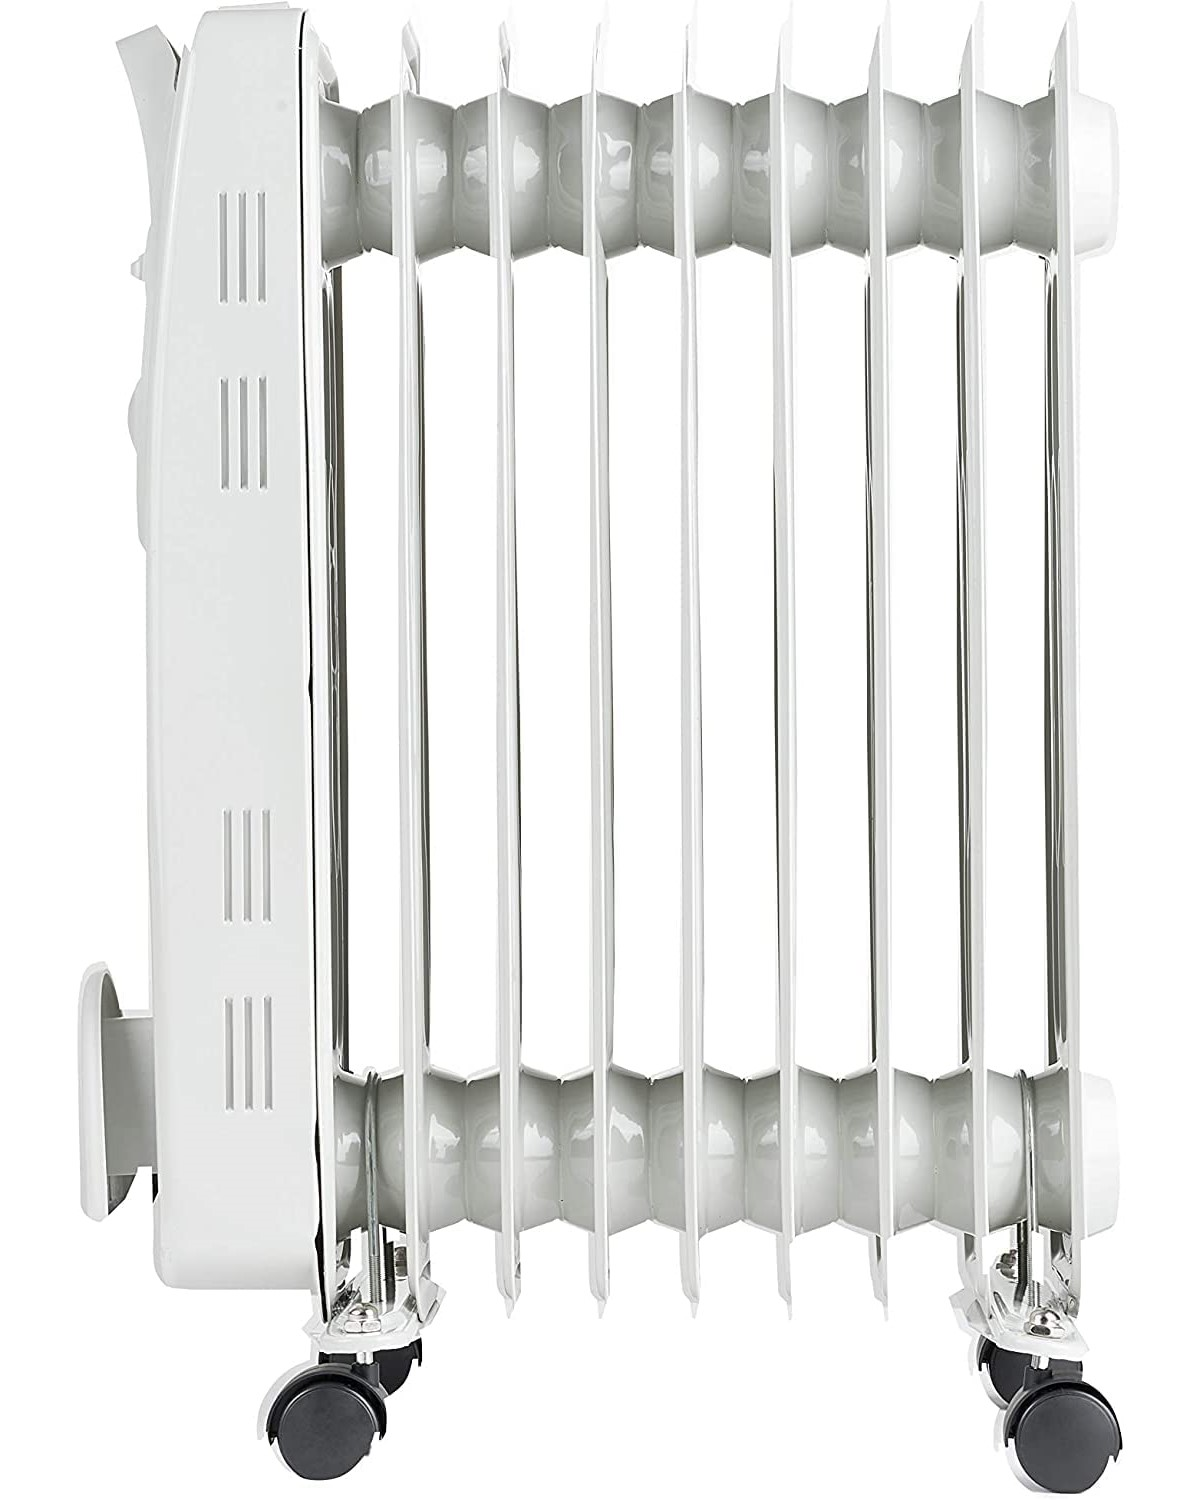 JUNG YPSOS WIN15 Ölradiator Elektrisch Raumgröße: mit Heizung 20 m²) (1,5 Thermostat kW